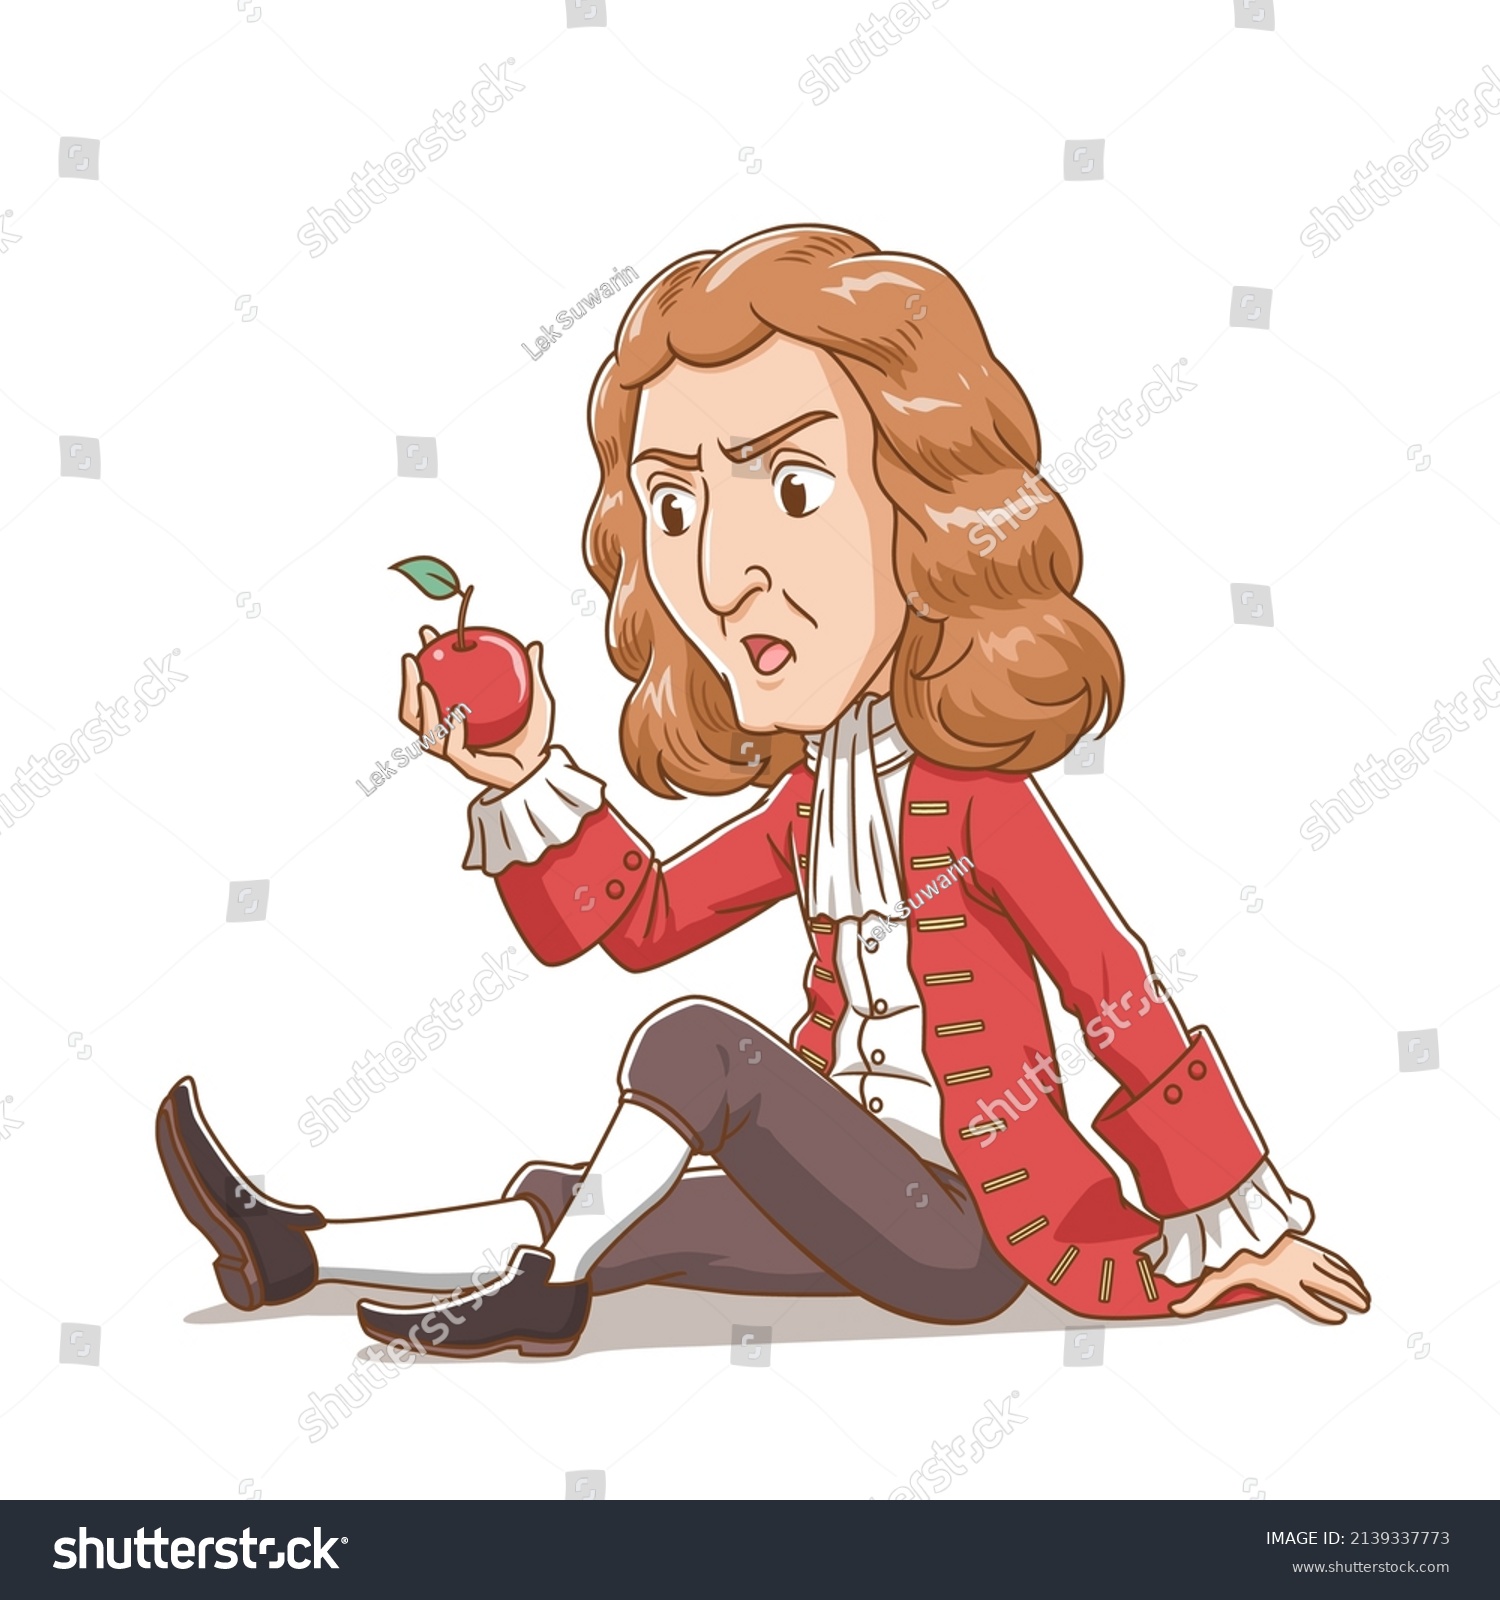 Caricatura De Sir Isaac Newton Mirando Vector De Stock Libre De Regalías 2139337773 2326